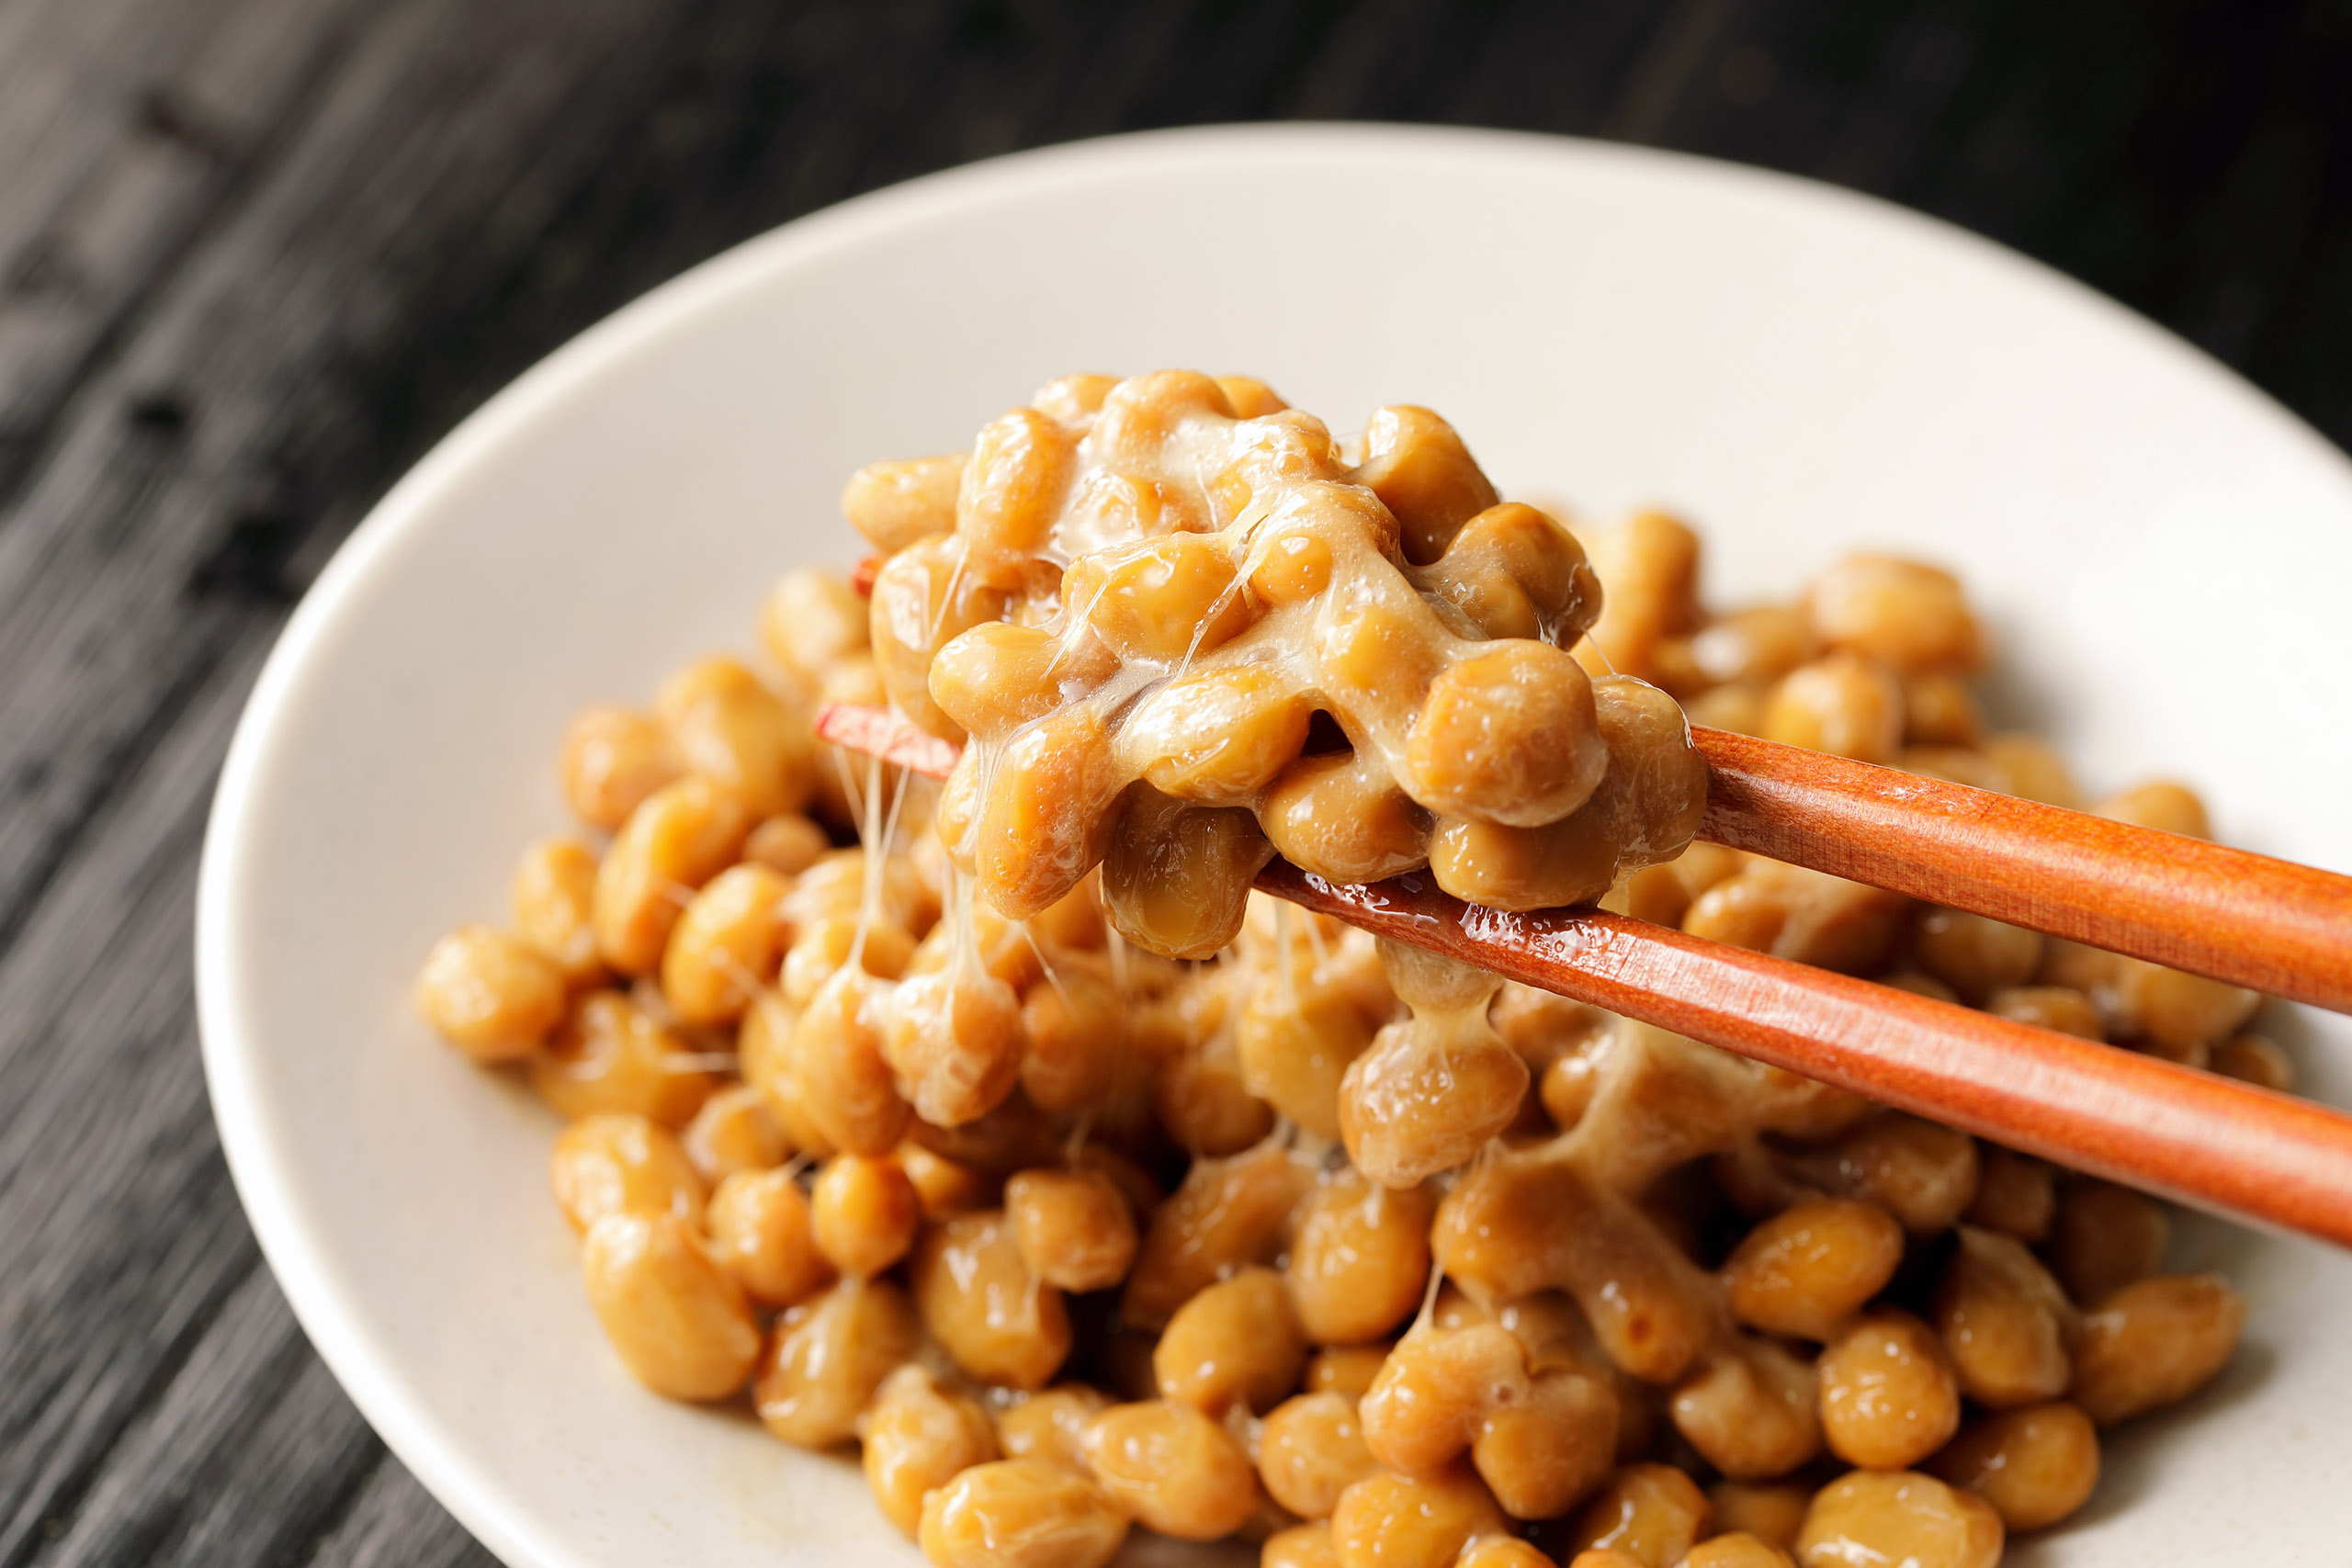 Le natto est une préparation traditionnelle japonaise à base de soja fermenté, qui contient naturellement de la vitamine K2 MK-7